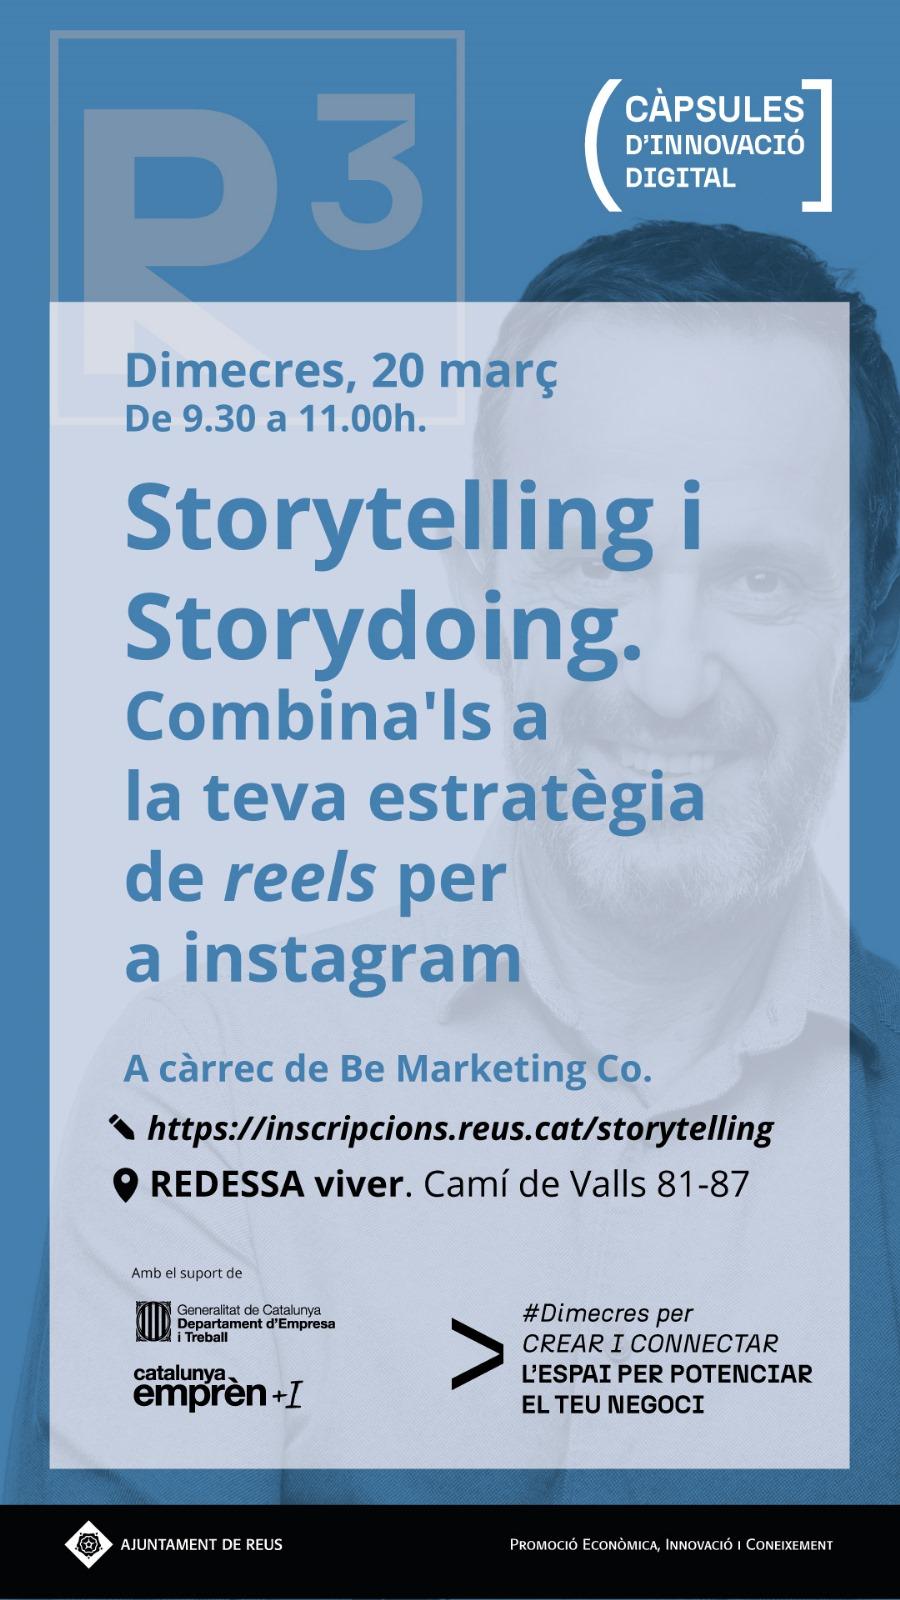 Storytelling i Storydoing. Combina'ls a la teva estratègia de reels per a instagram